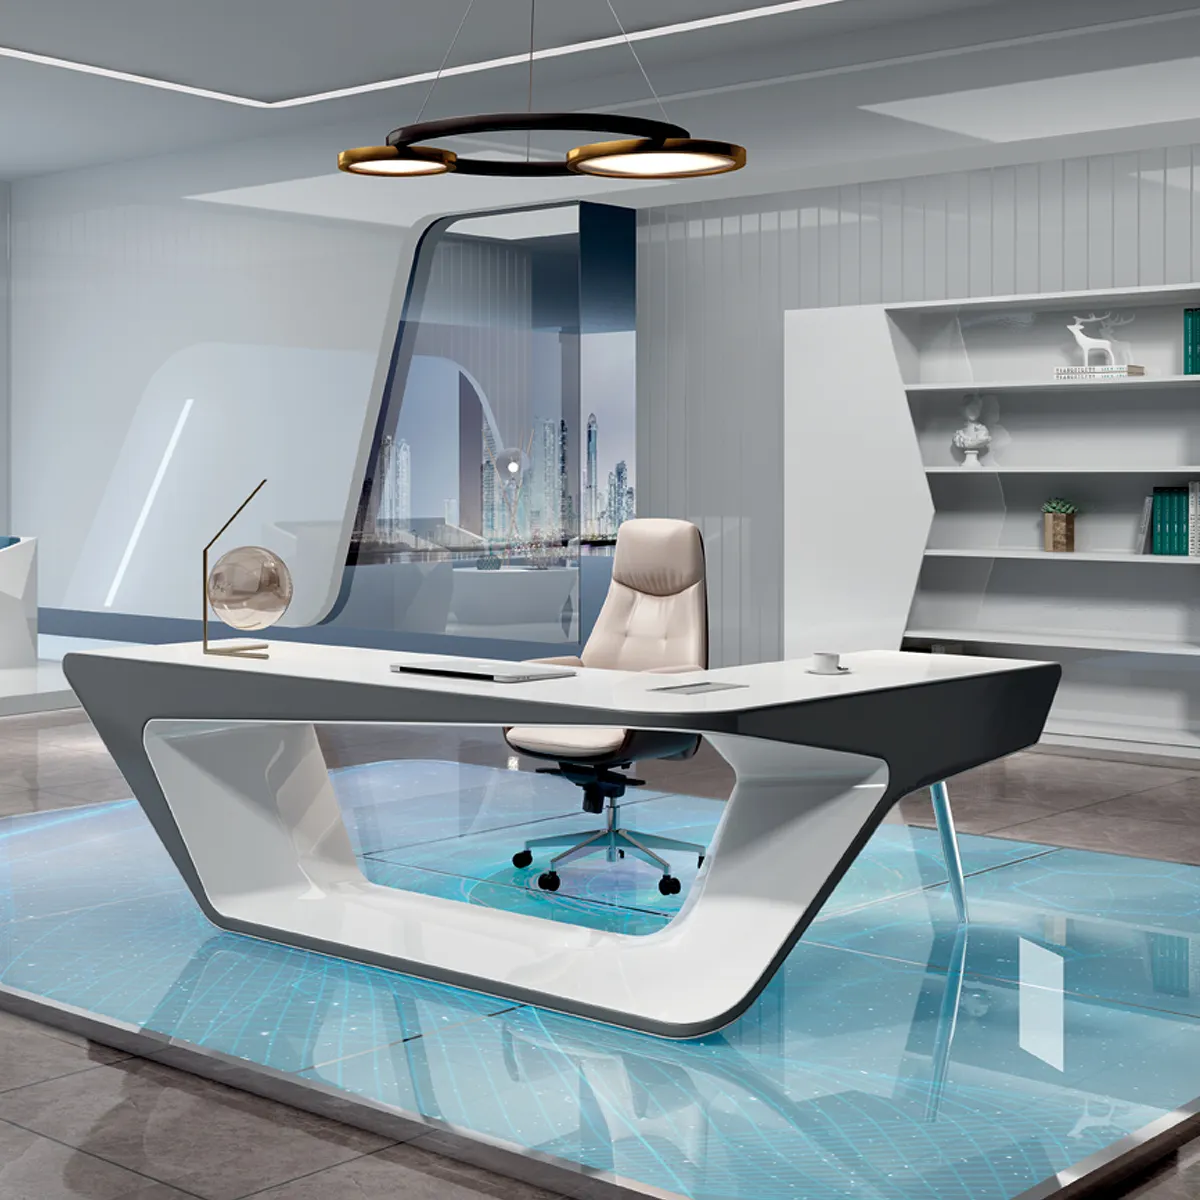 Beyaz parlak lüks L şekilli Modern mobilya ev stüdyosu çalışma akıllı kablosuz şarj yüksek teknoloji CEO patron yönetici ofis masası